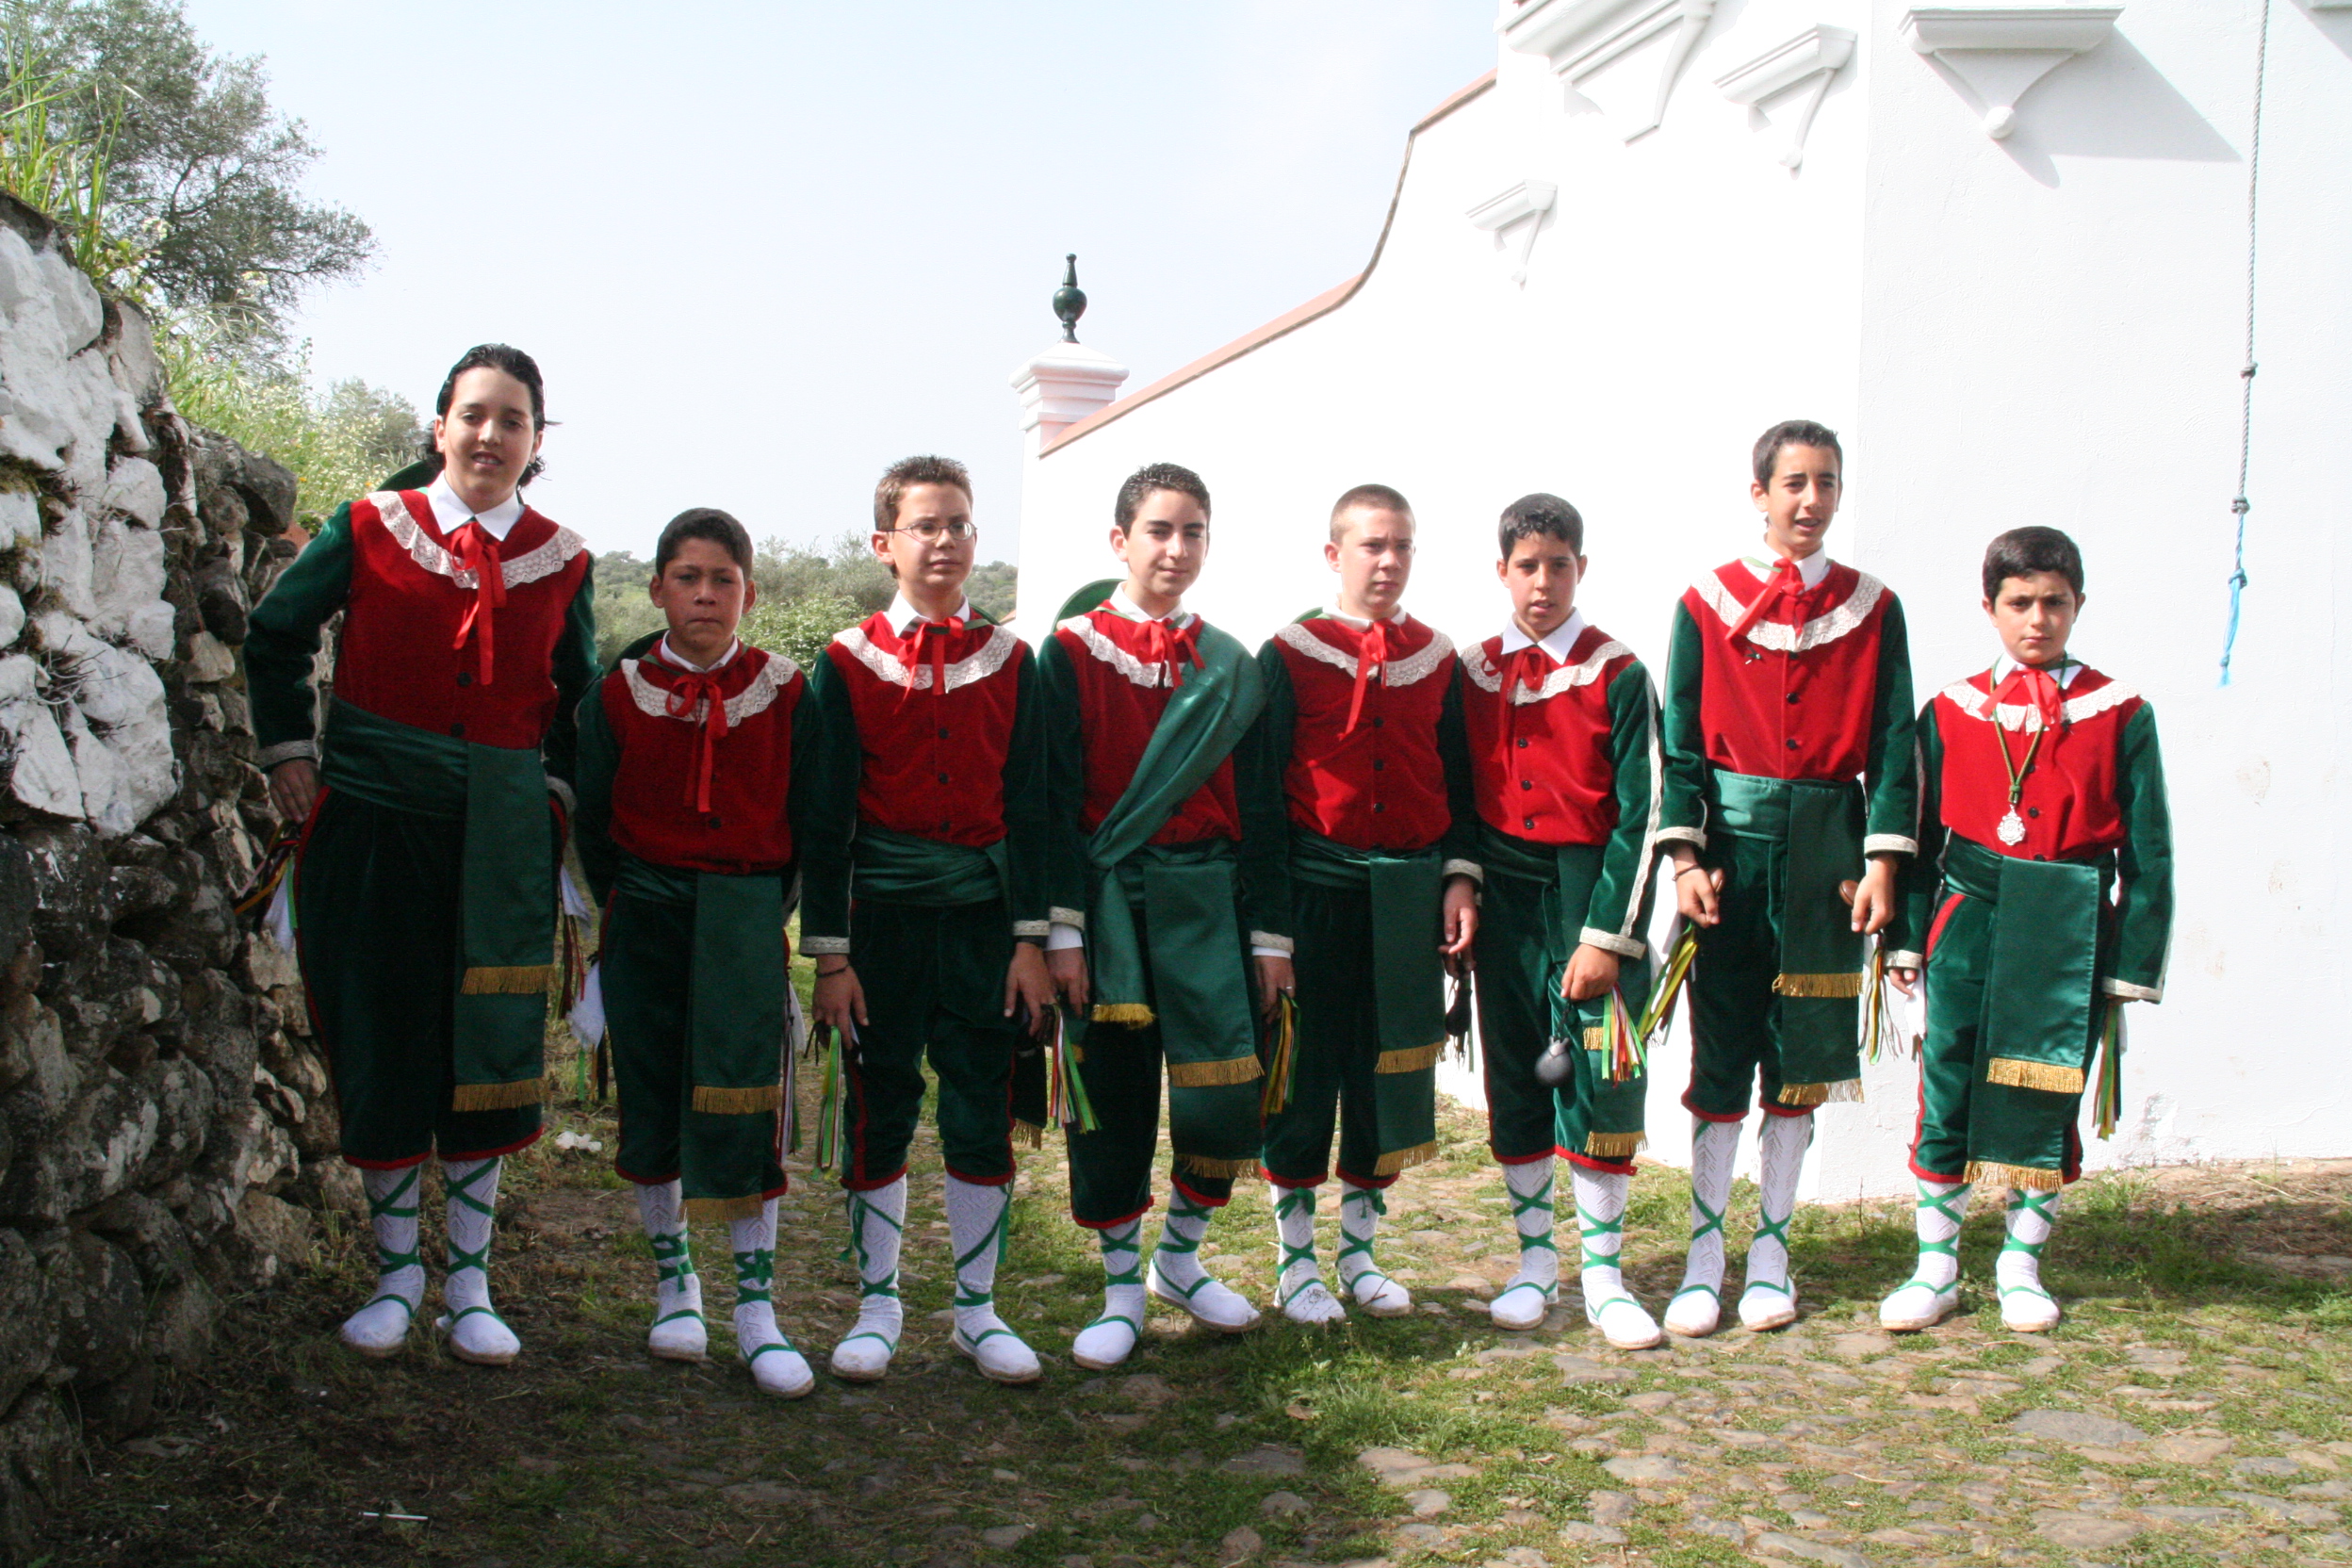 Danza en honor a la Virgen de la Esperanza 04, Grupo de danza infantil. Cumbre Mayores, Huelva